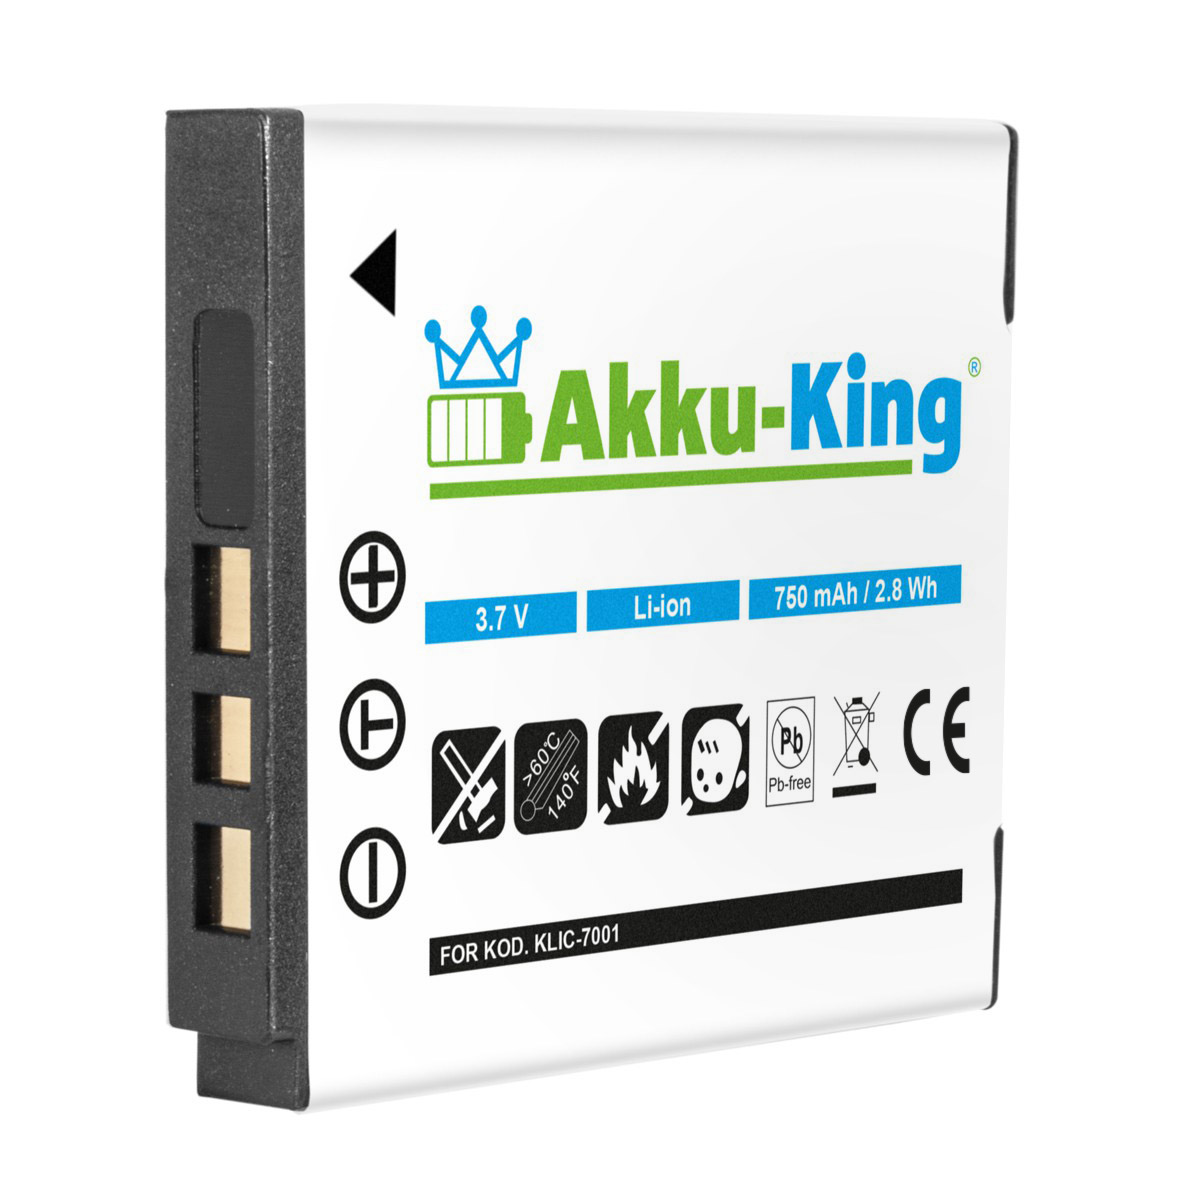 3.7 mit Akku Li-Ion Klic-7001 Kodak kompatibel Volt, AKKU-KING Kamera-Akku, 750mAh